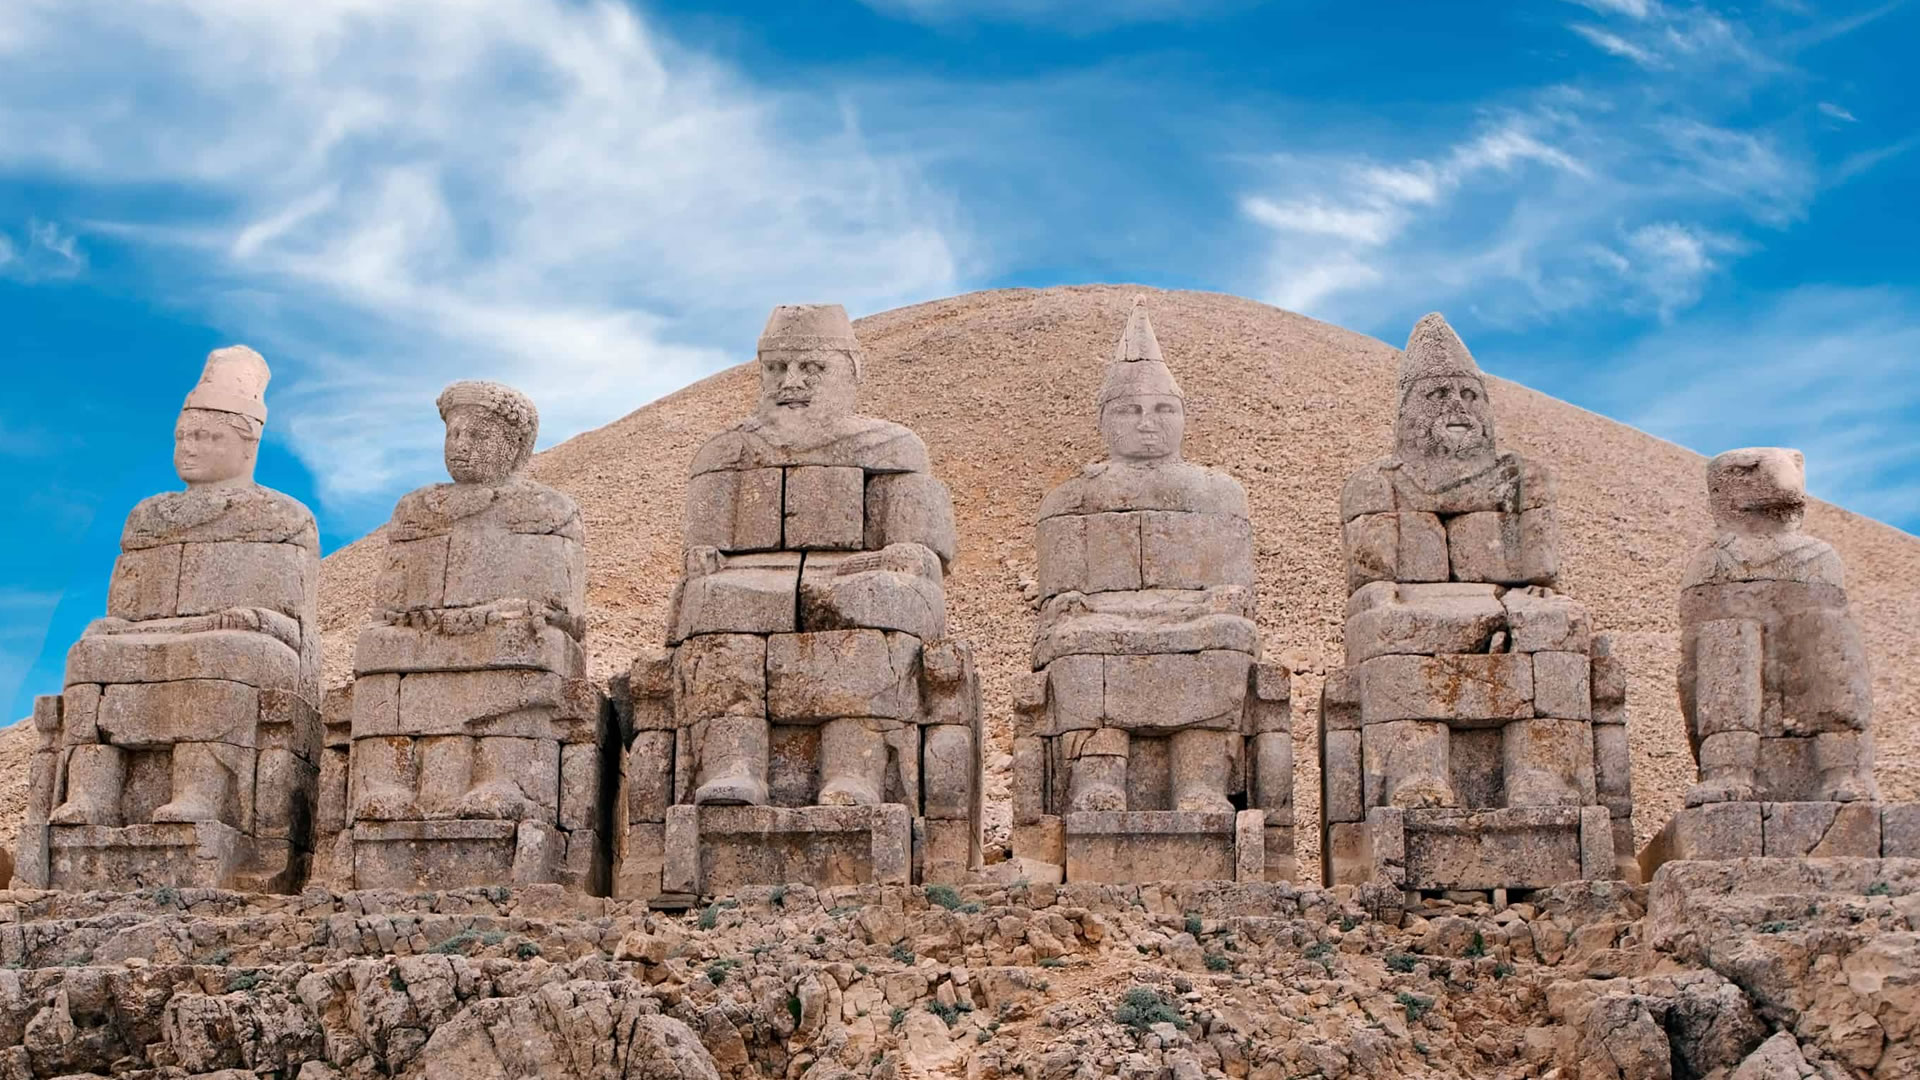 Nemrut-Denkmal Monumente, die aus den Tiefen der Geschichte emporragen